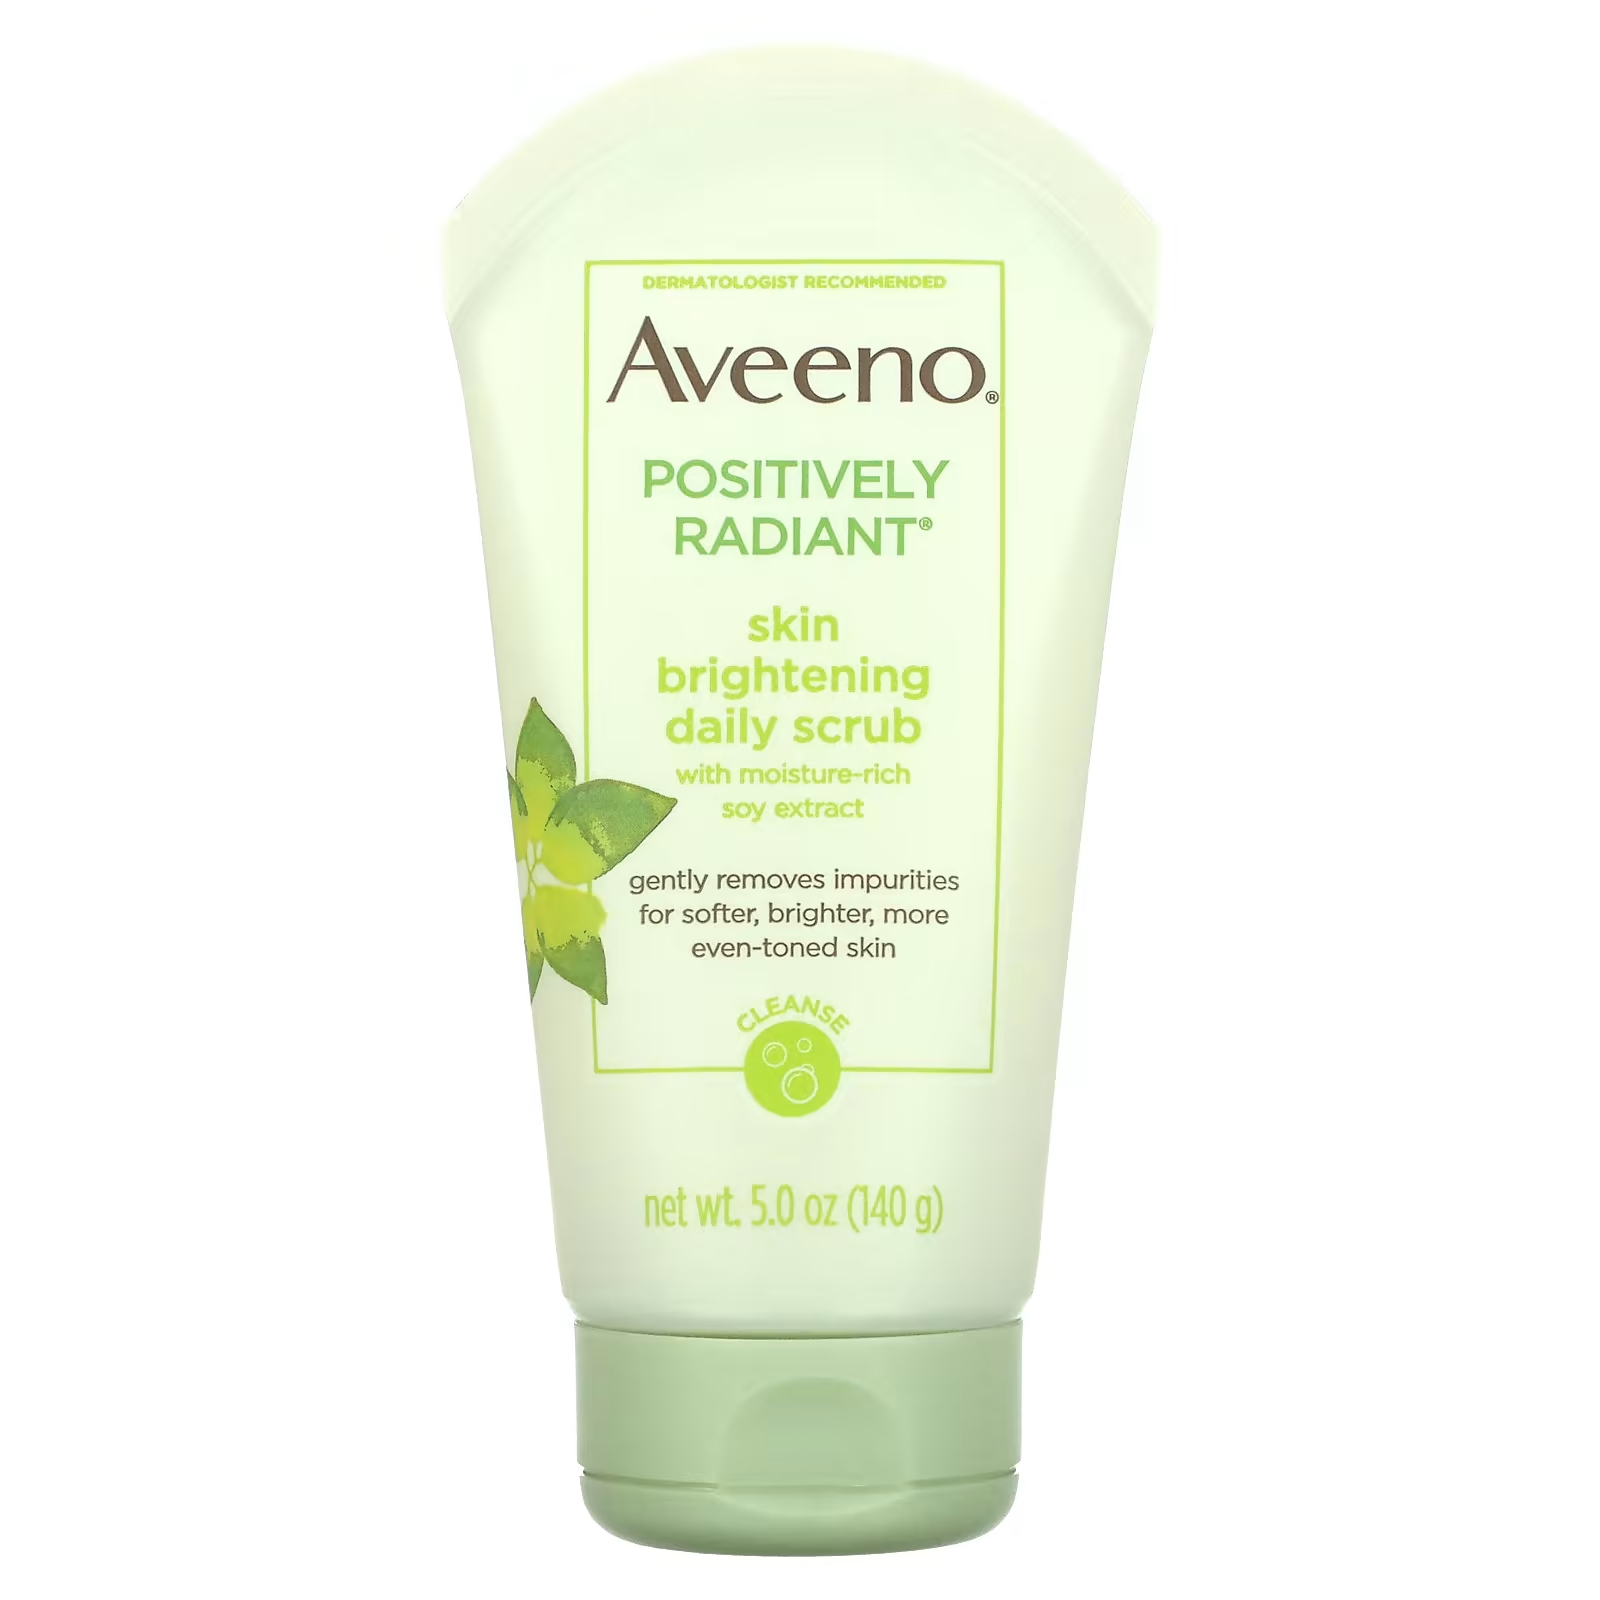 Aveeno Ежедневный скраб для осветления кожи Positively Radiant, 5 унций (140 г) aveeno active naturals positively radiant ежедневный осветляющий скраб для кожи 140 г 5 0 унций